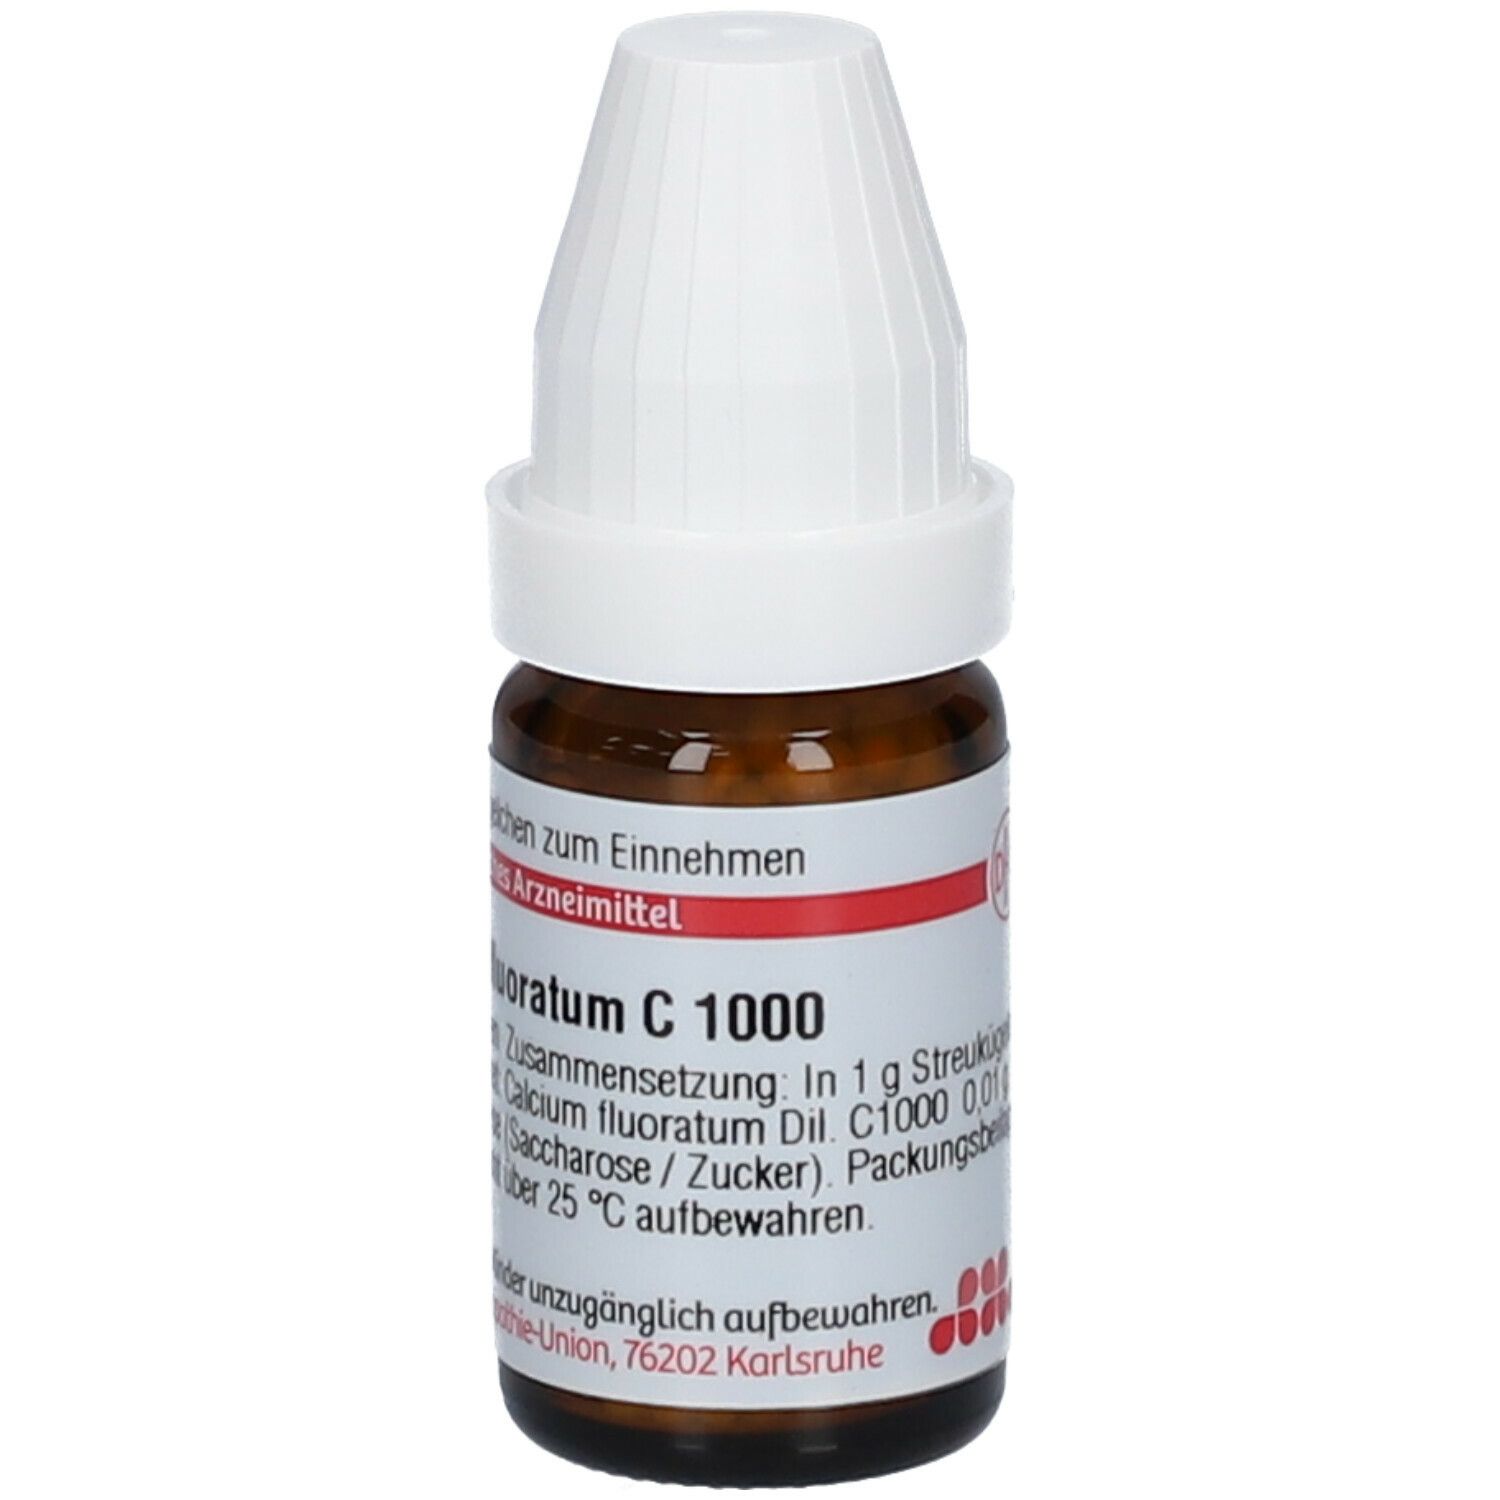 DHU Calcium Fluoratum C1000